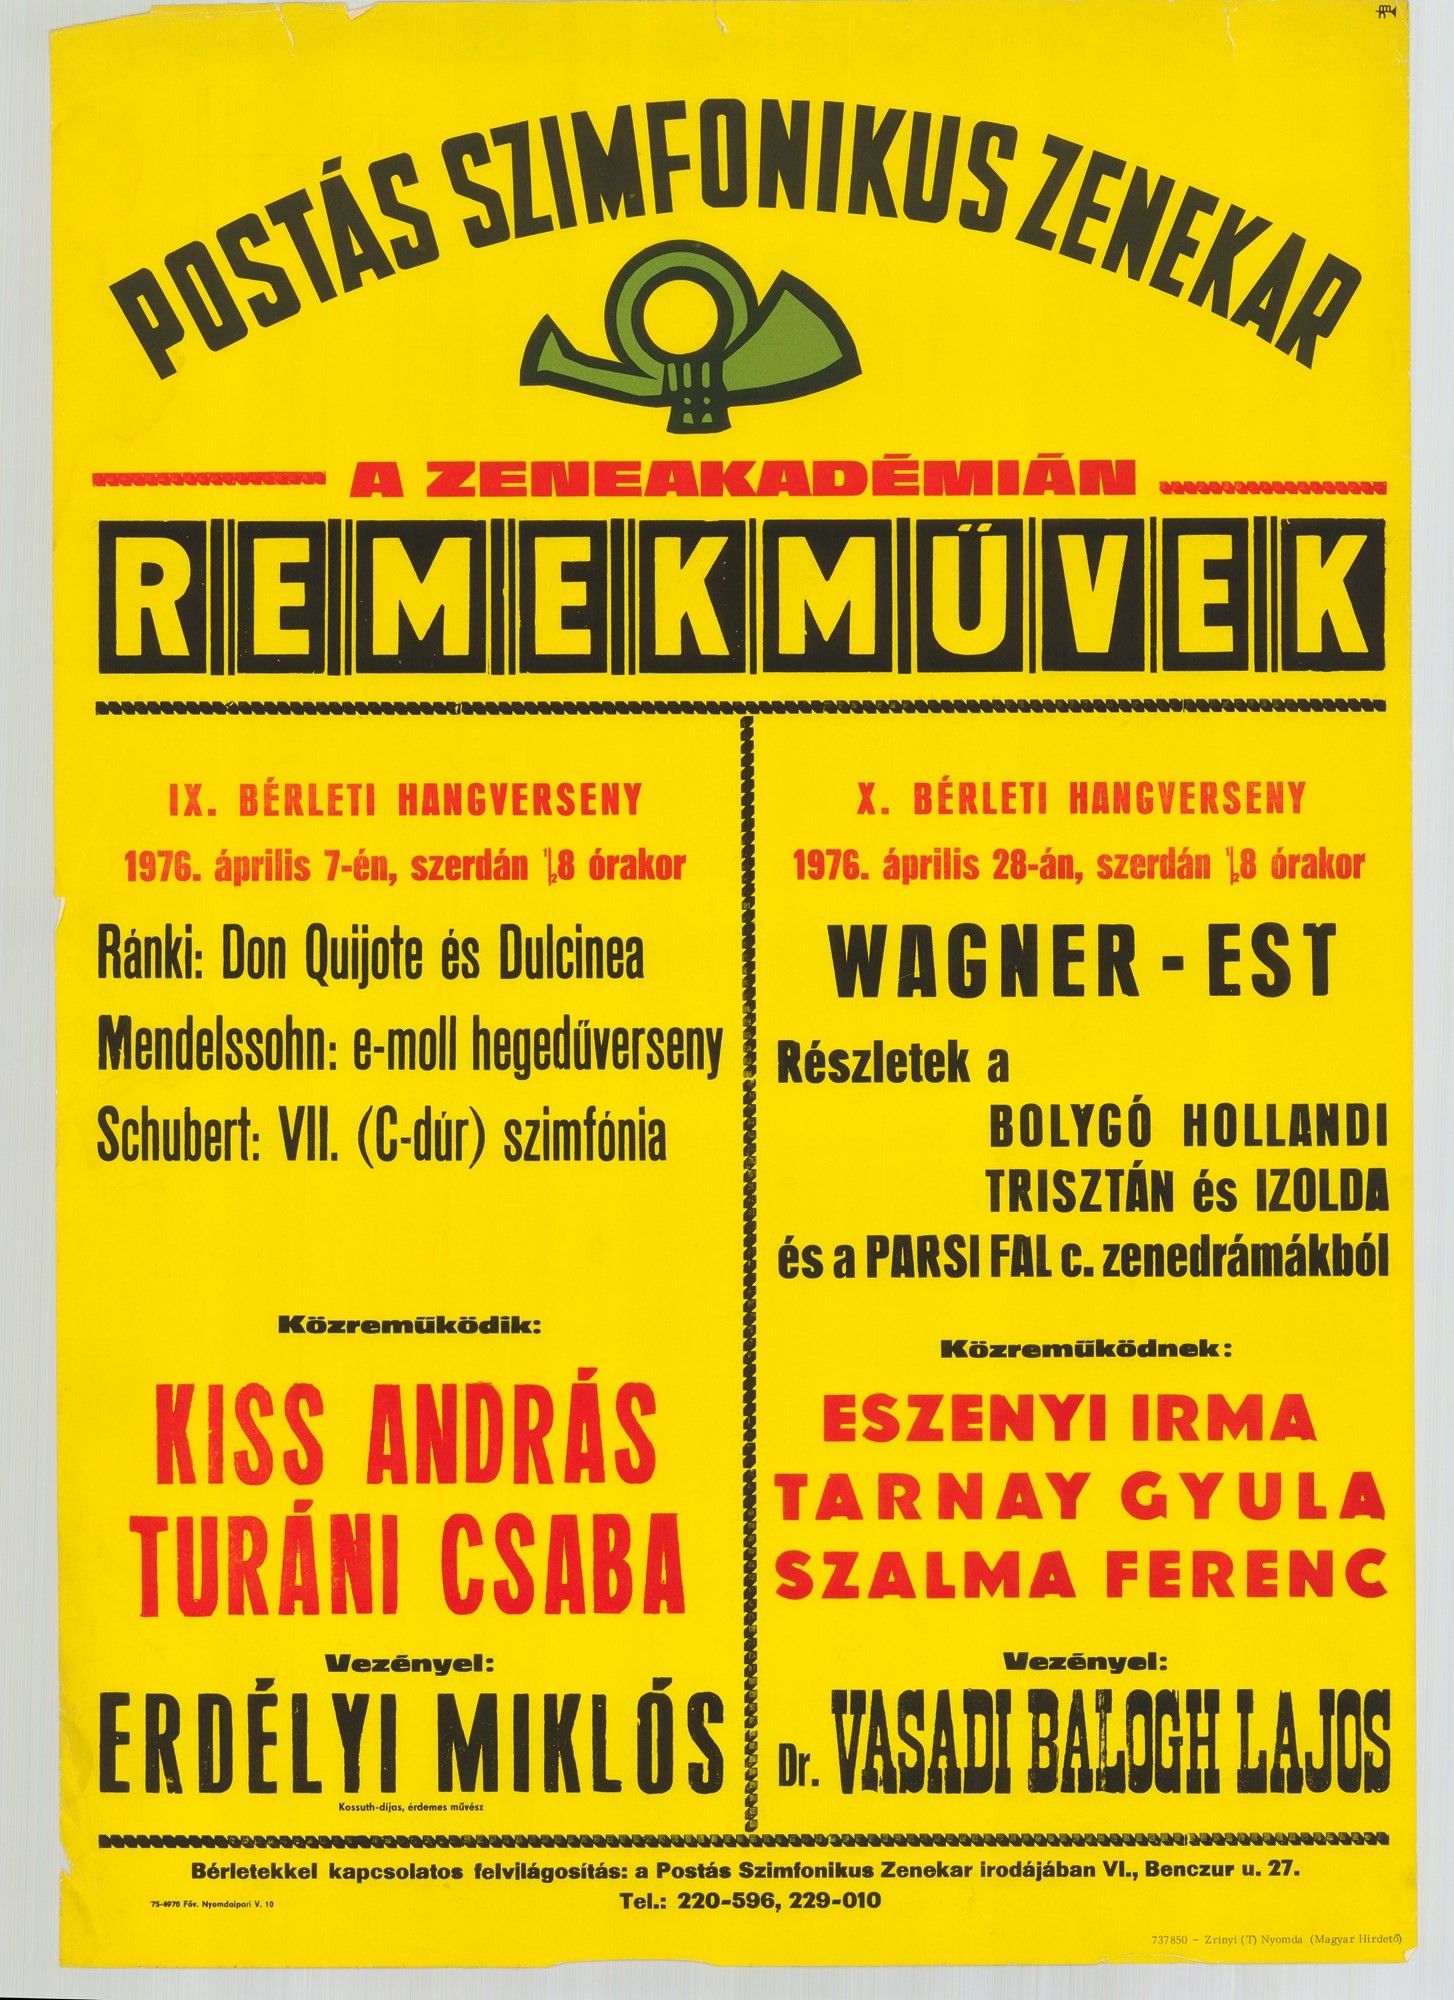 Plakát - Postás Szimfonikus Zenekar a Zeneakadémián, 1976 (Postamúzeum CC BY-NC-SA)